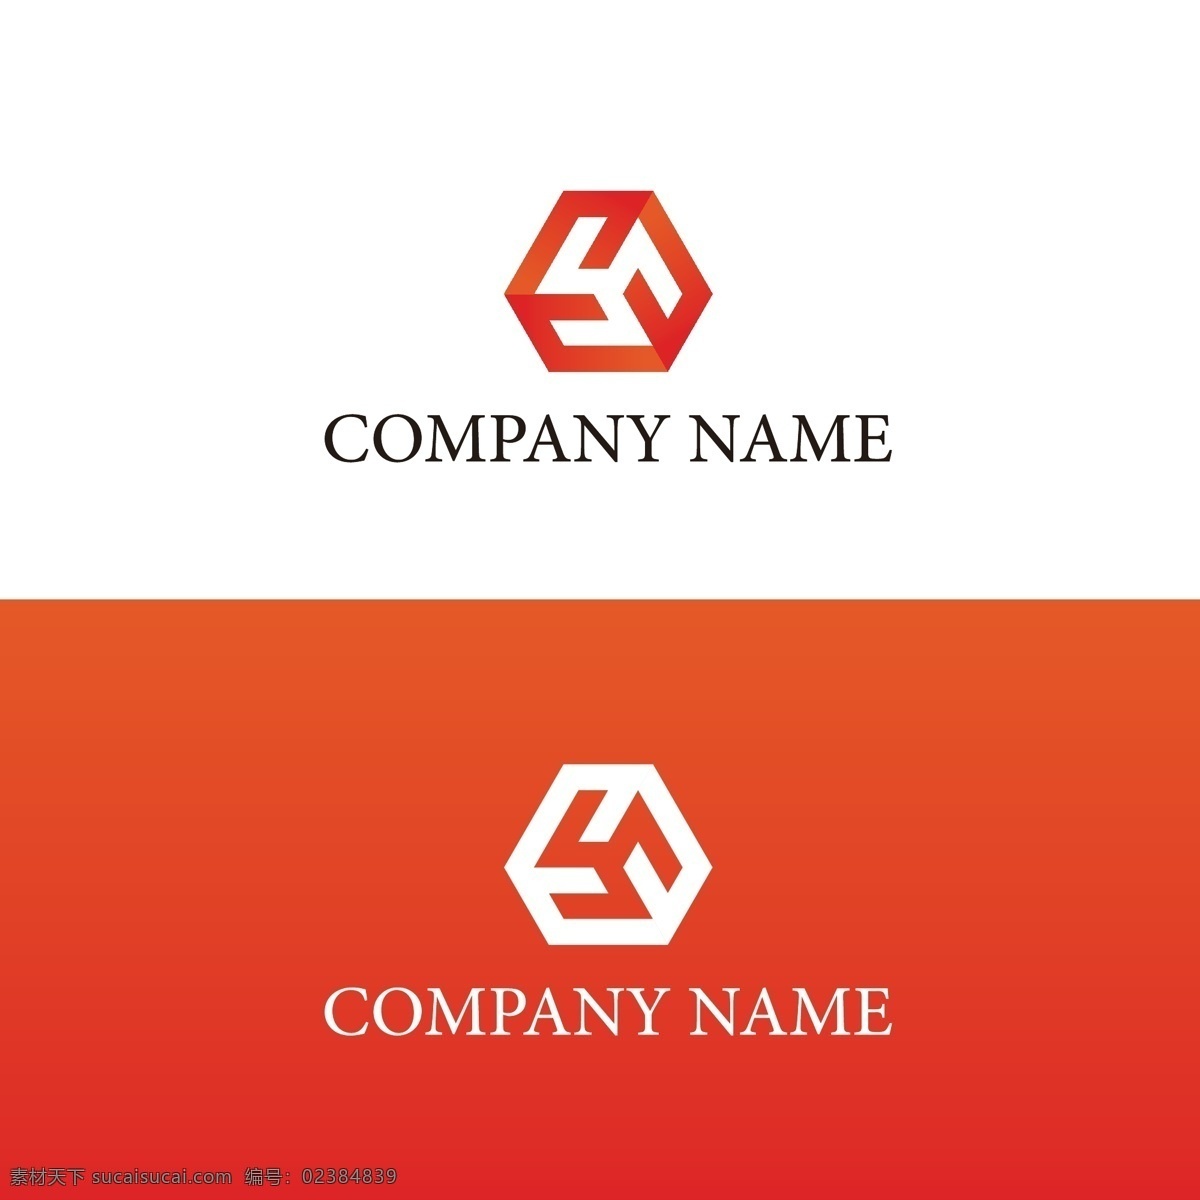 企业 公司 商标 logo 红色 建筑 商业 广告 简约 渐变 工业